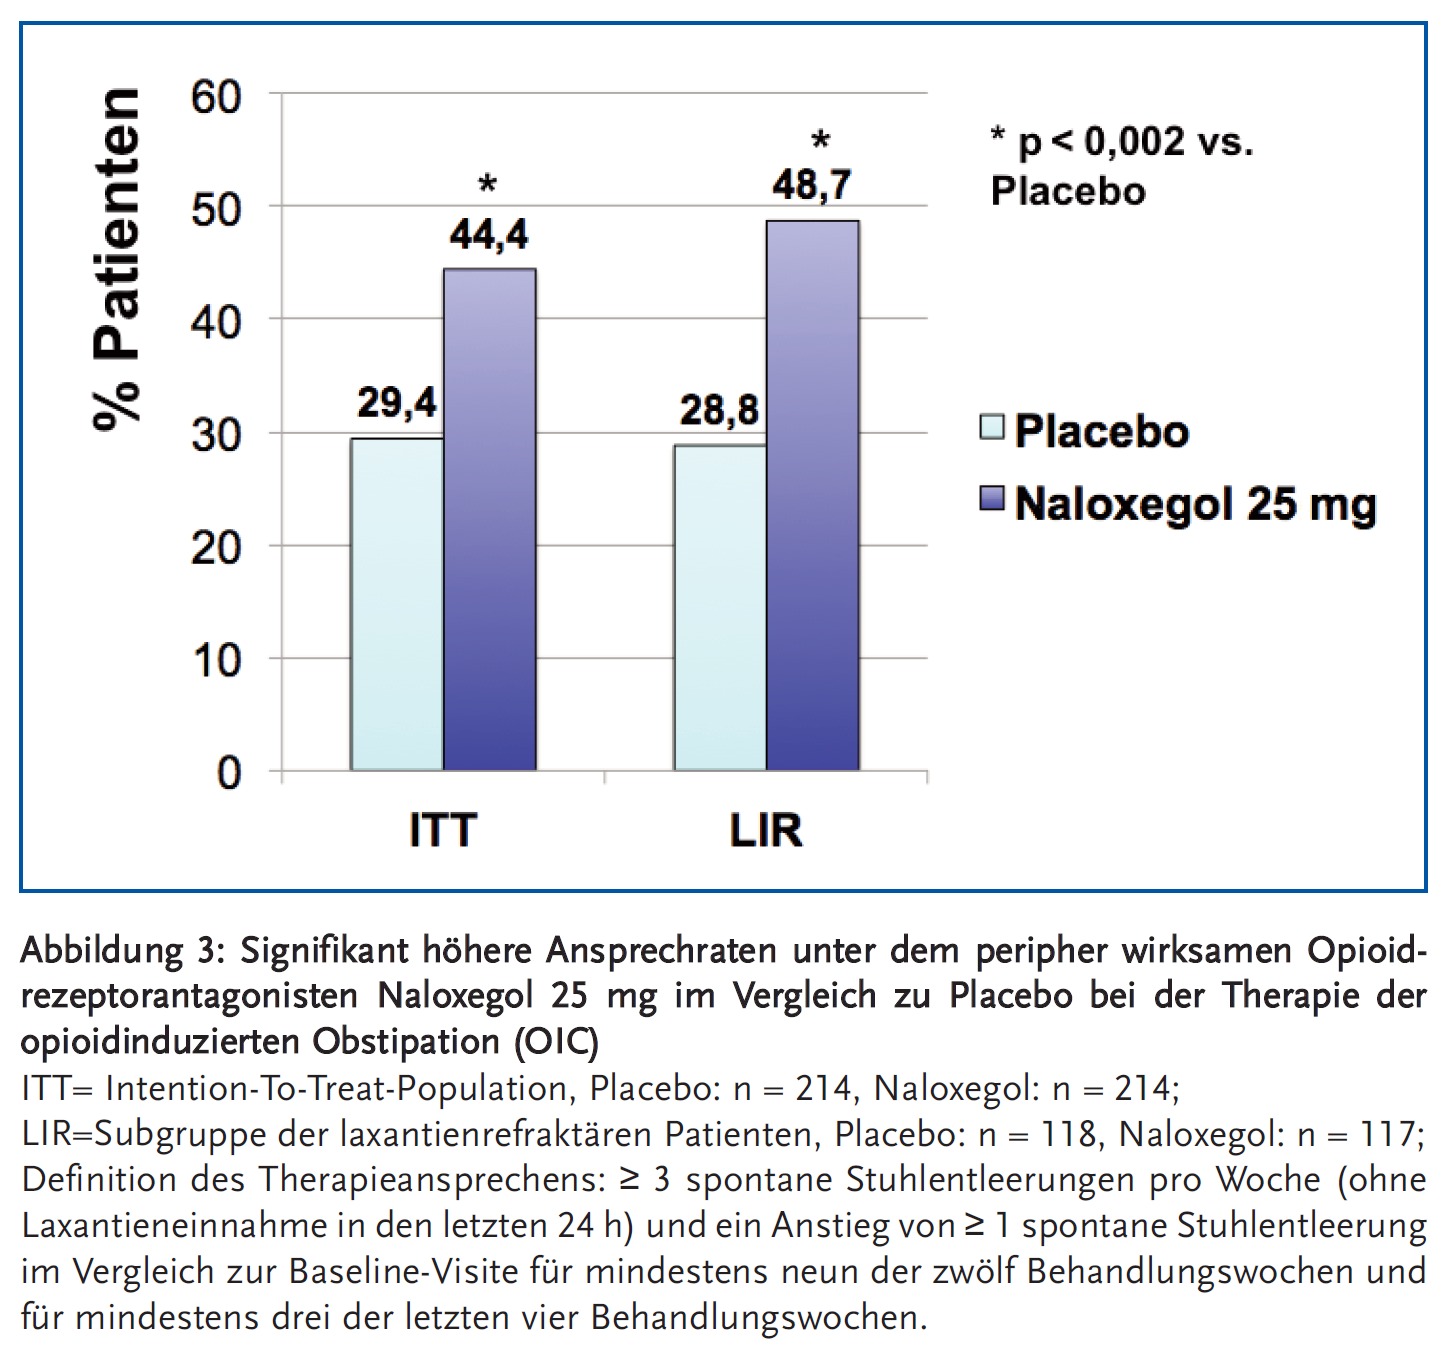 Abbildung 3: Signifikant höhere Ansprechraten unter dem peripher wirksamen Opioid-rezeptorantagonisten Naloxegol 25 mg im Vergleich zu Placebo bei der Therapie der opioid induzierten Obstipation (OIC)